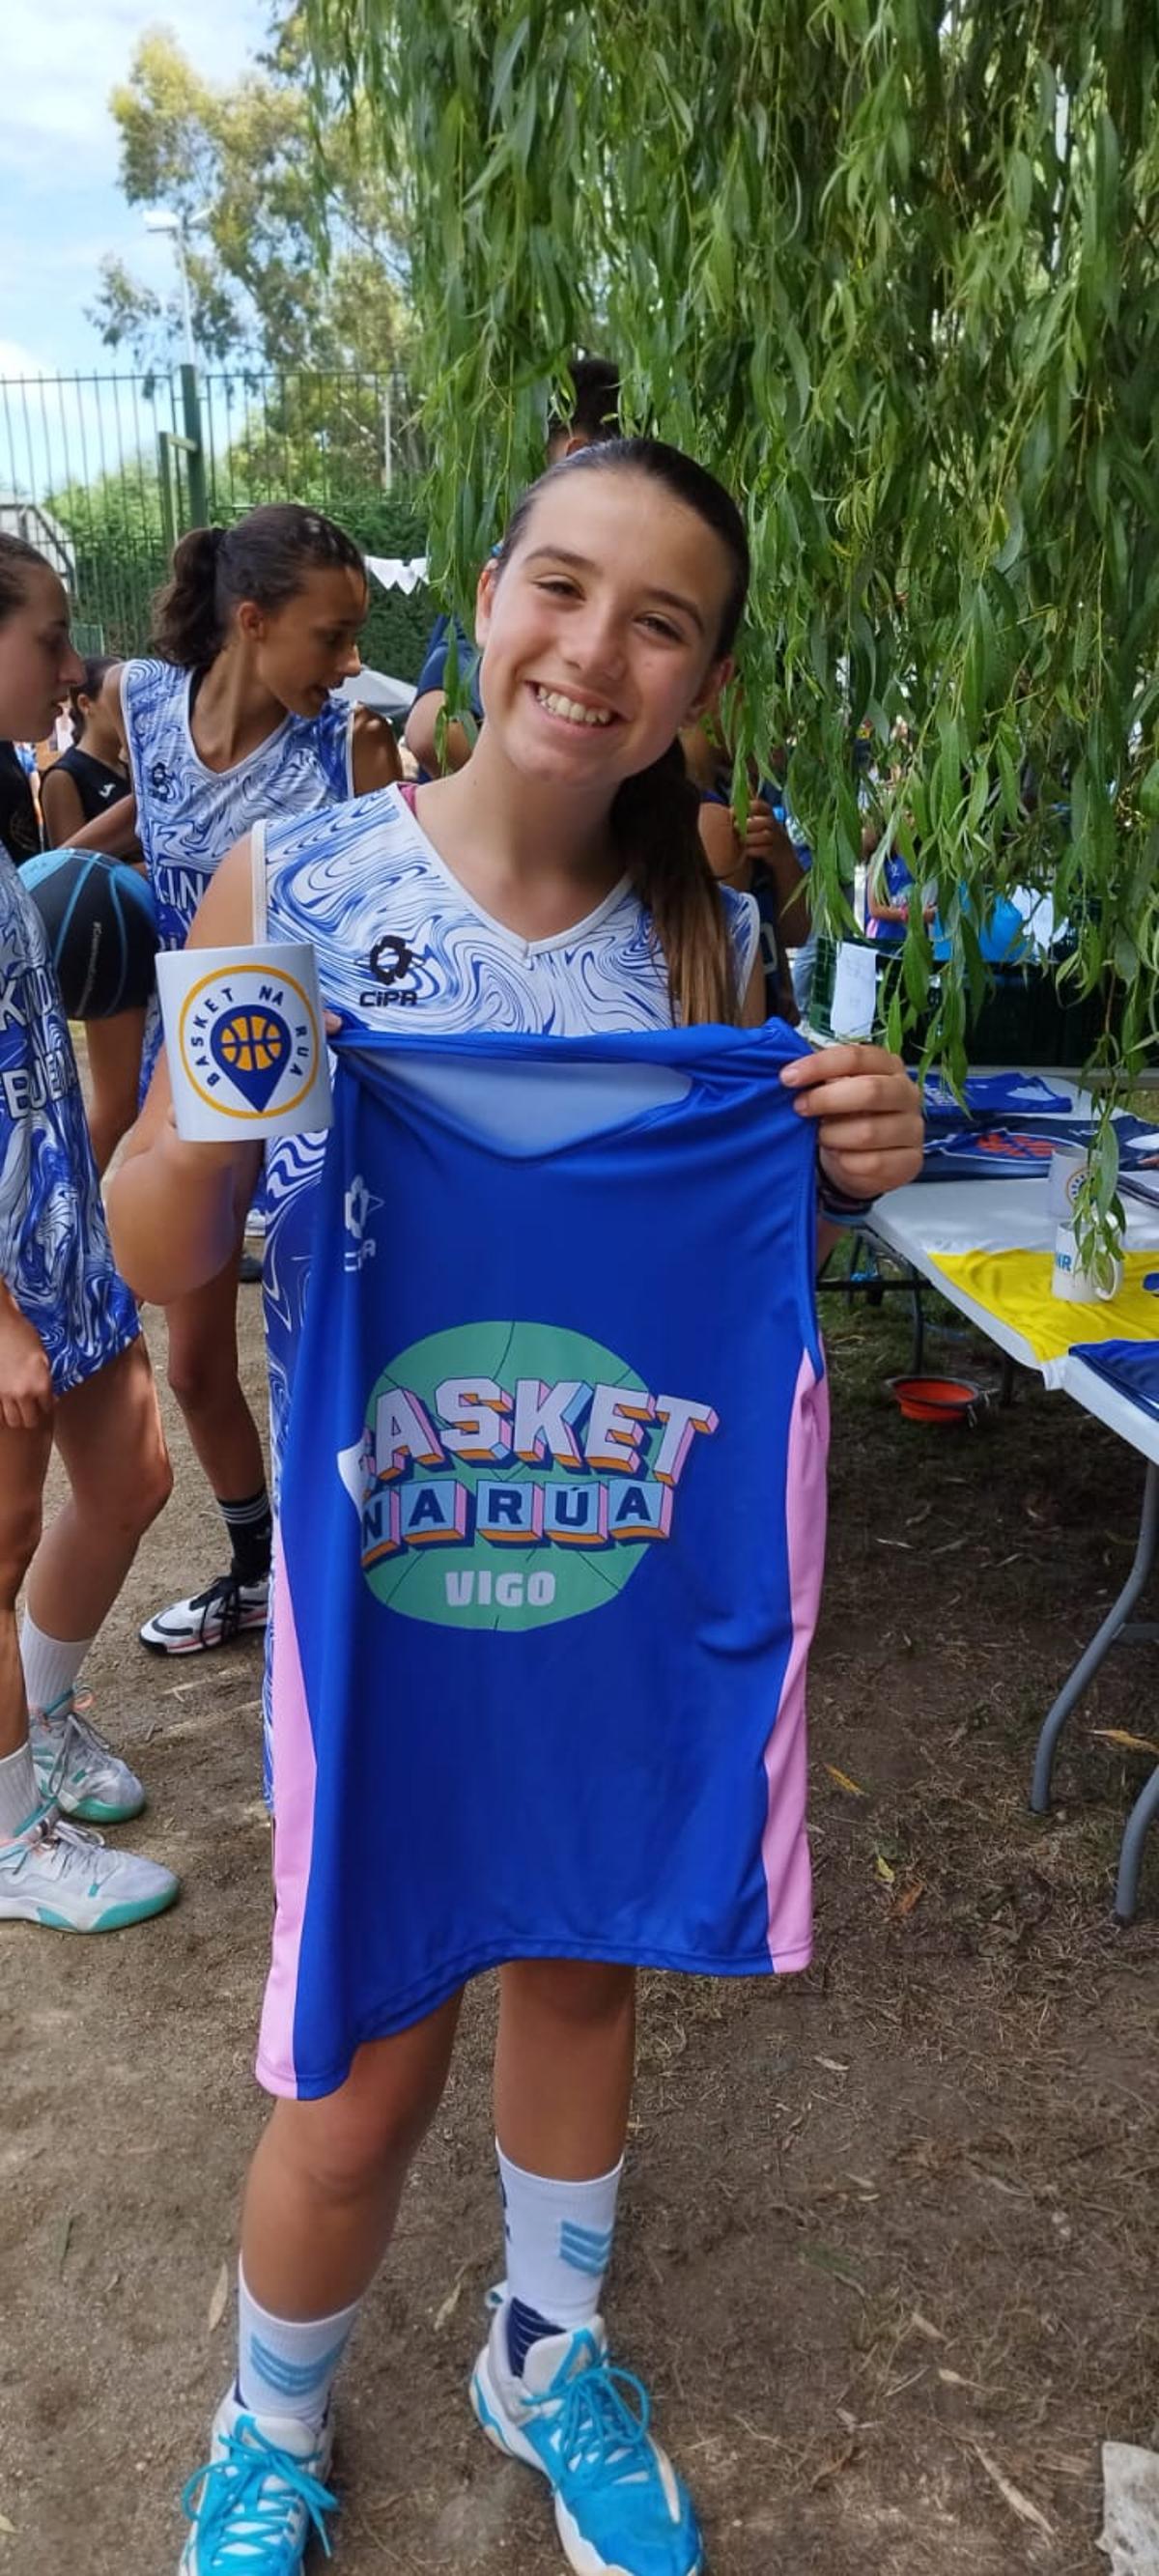 Una jugadora, con una camiseta del torneo.